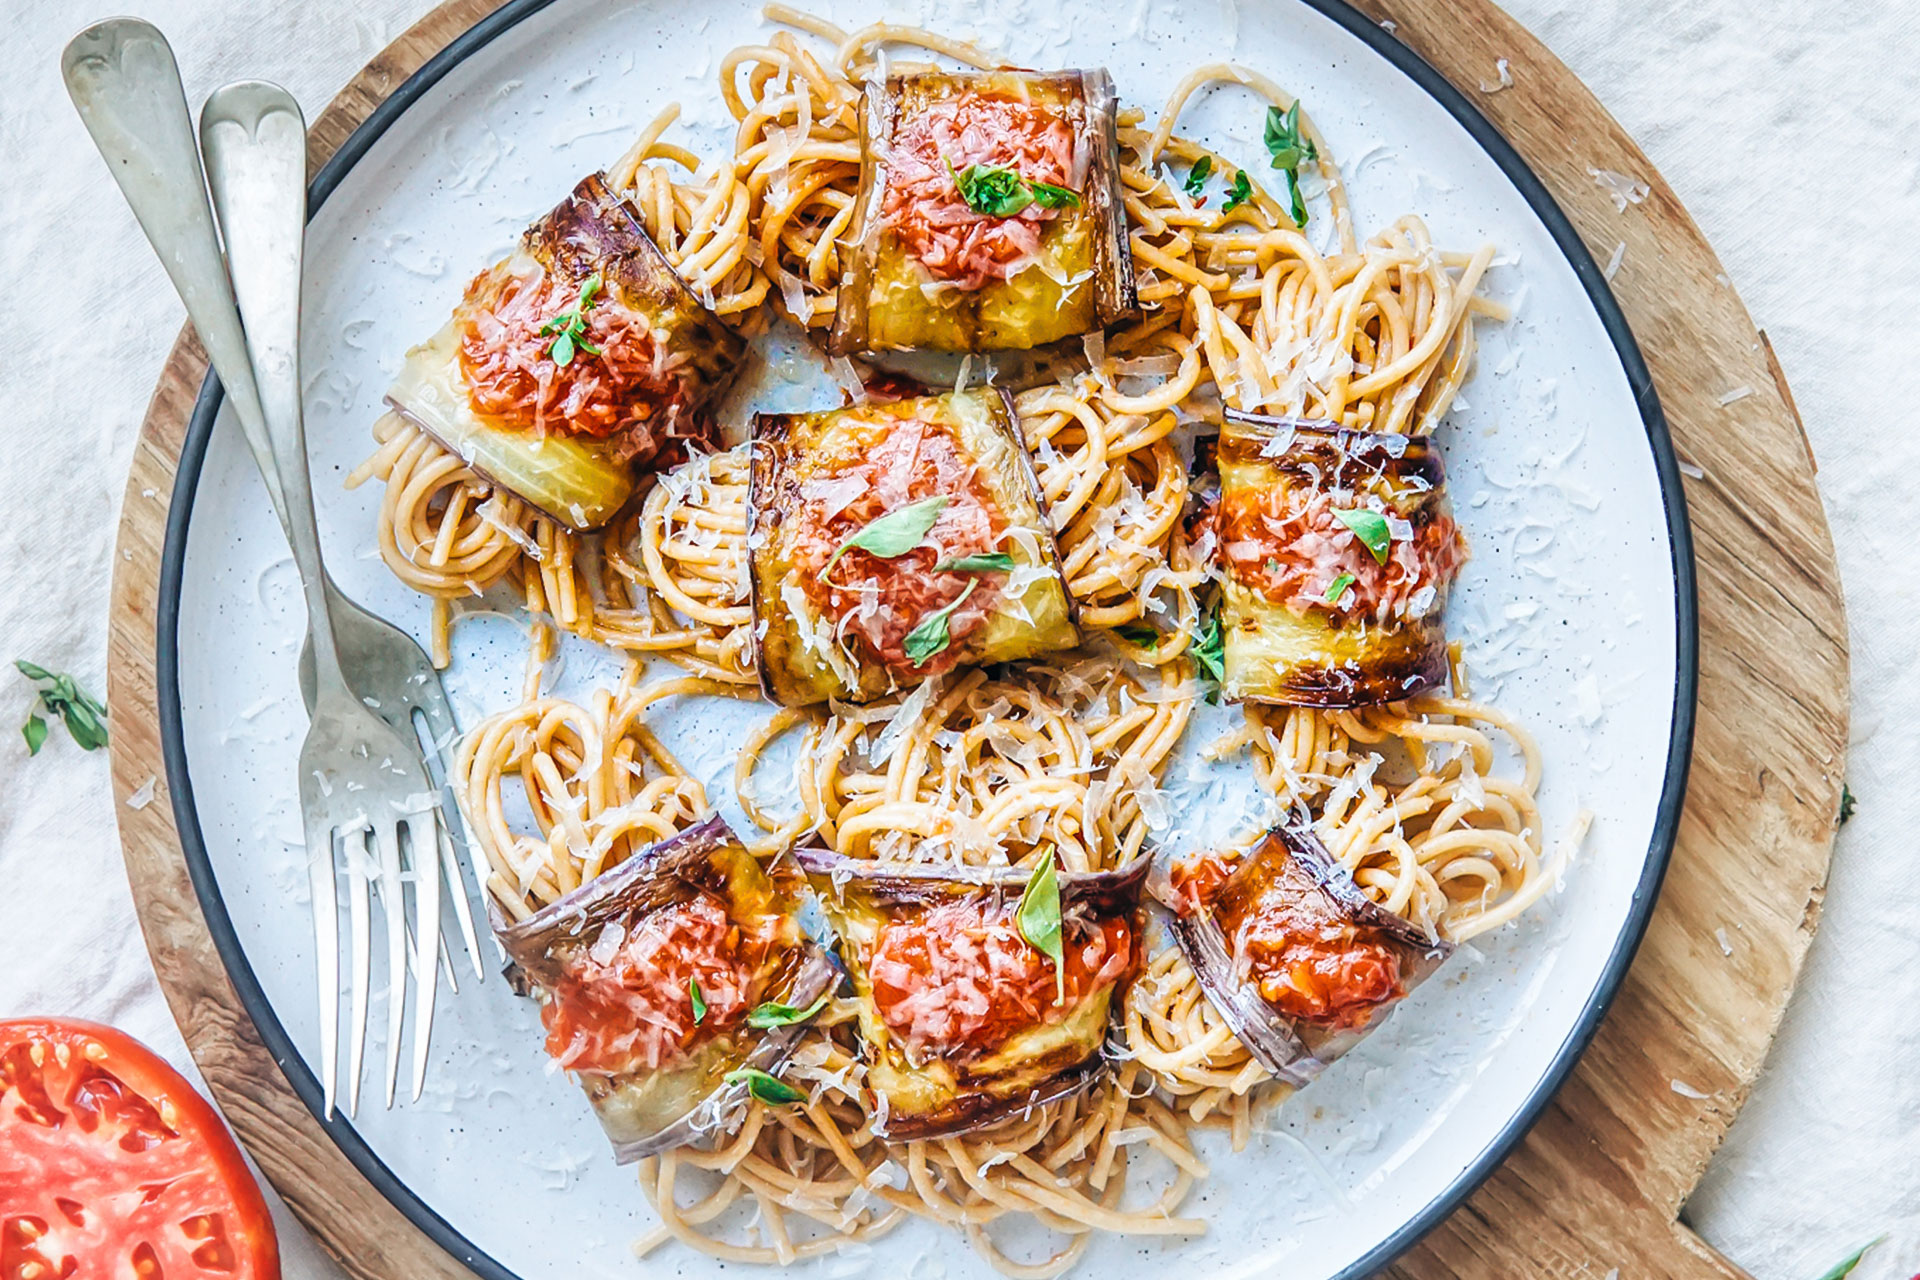 Berenjenas rellenas de espaguetis al pomodoro y queso Grana Padano